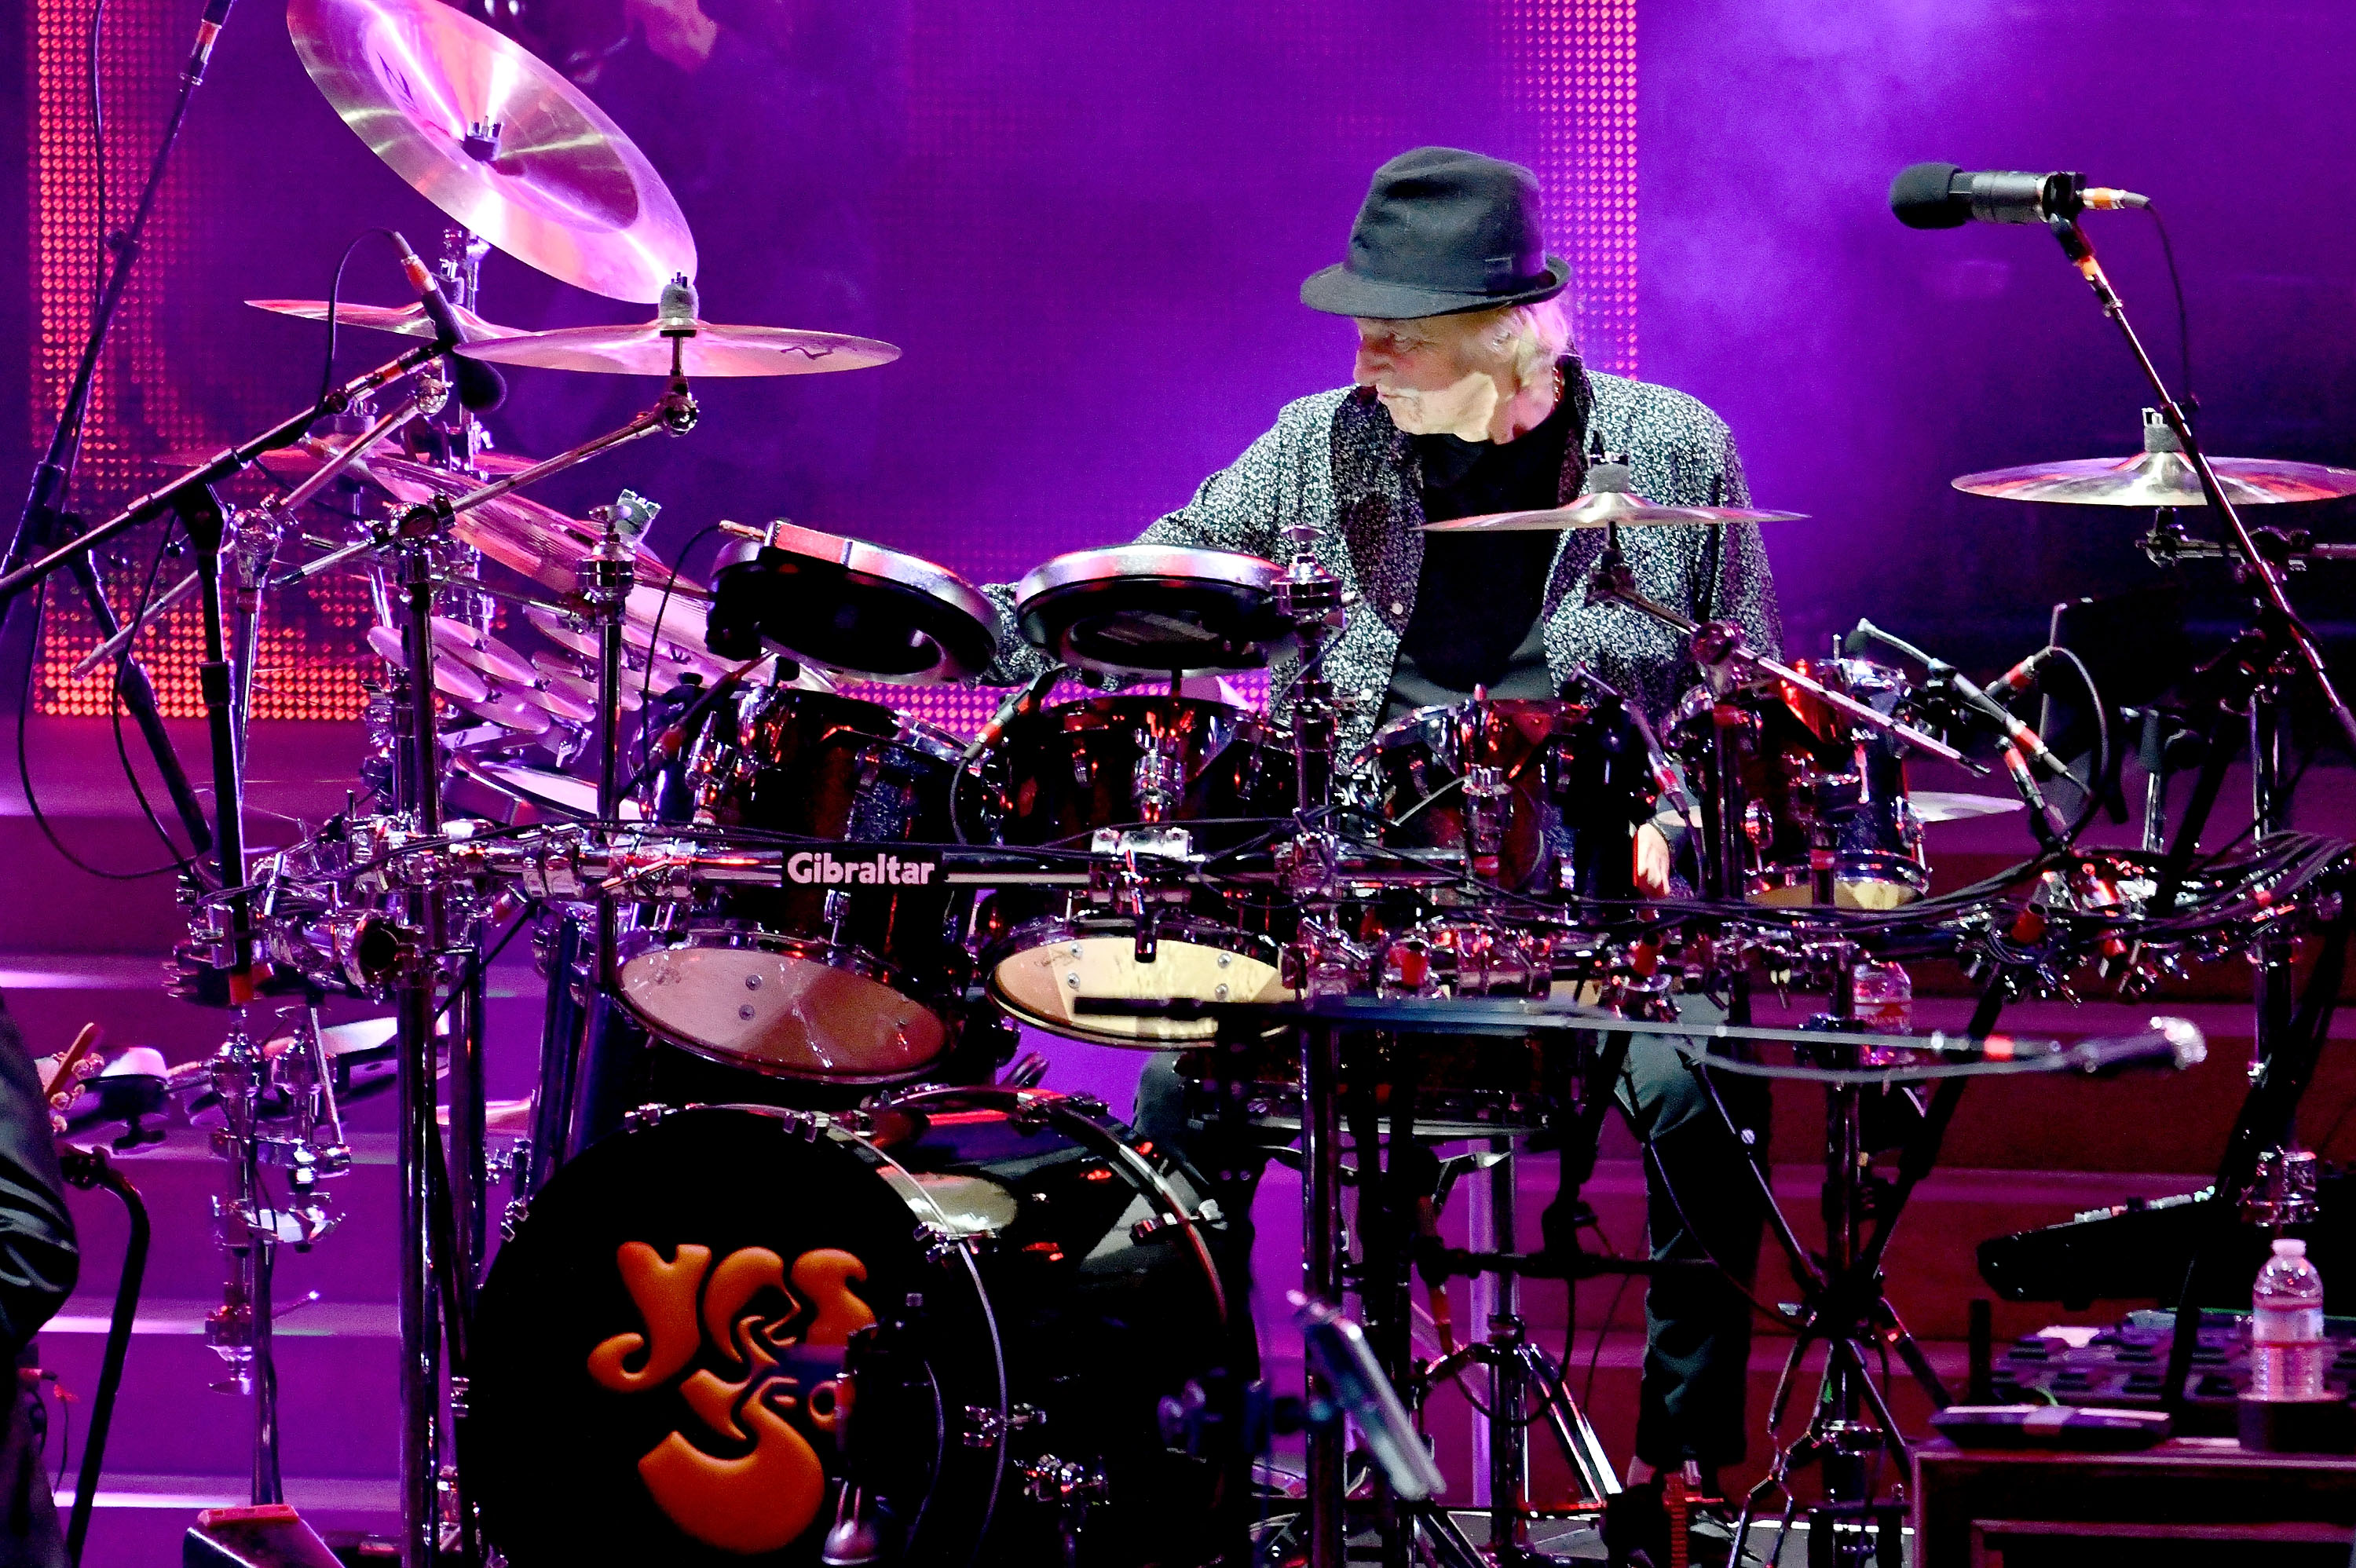 Alan White, baterista de Yes, actúa en el escenario durante la gira del 50 aniversario de la banda en el Teatro Ford el 19 de junio de 2018 en Hollywood, California (Foto de Scott Dudelson/Getty Images)